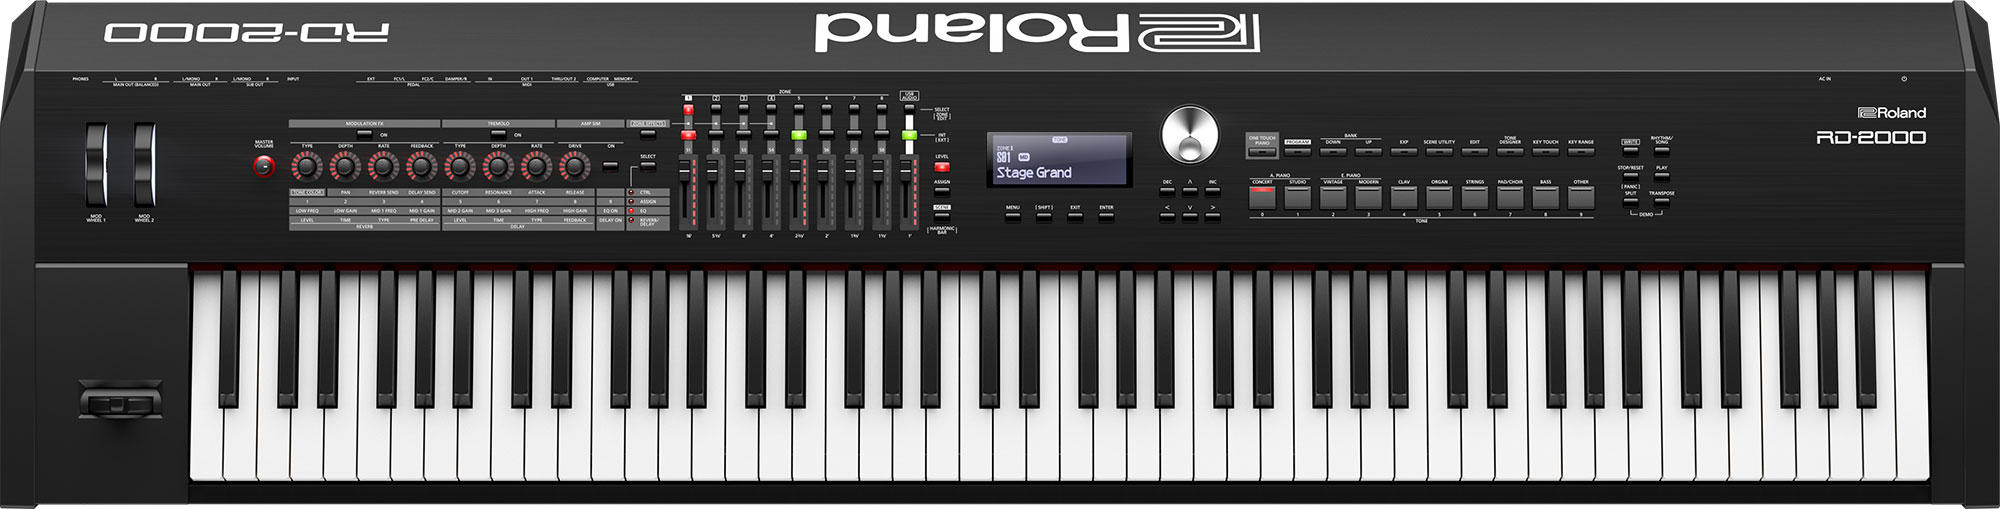 Roland RDシリーズ デジタルステージピアノRD-2000新品即納可能です